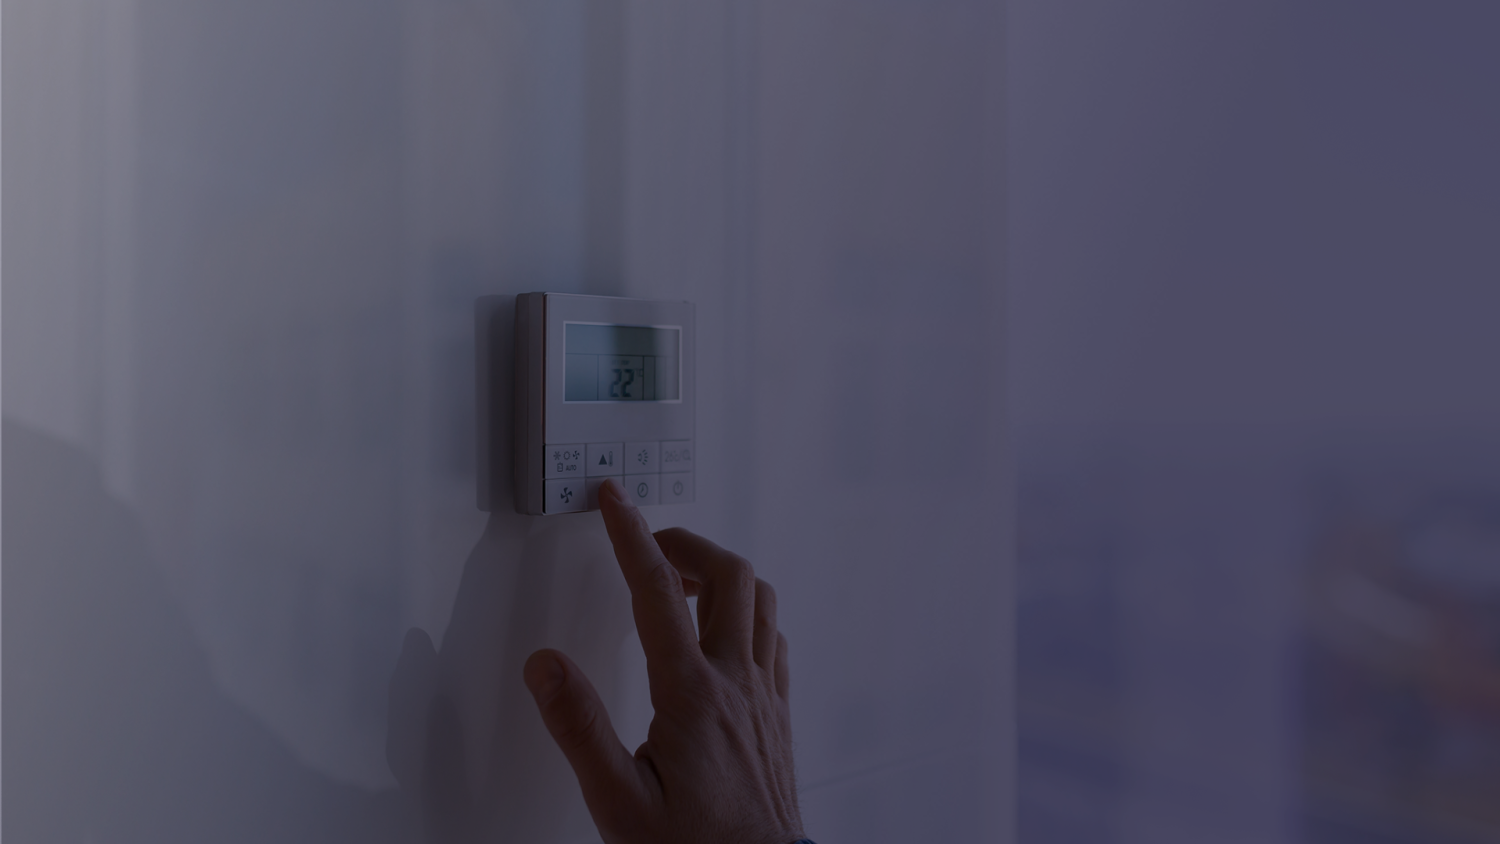 EcoWatt - Baisser la température de chauffage